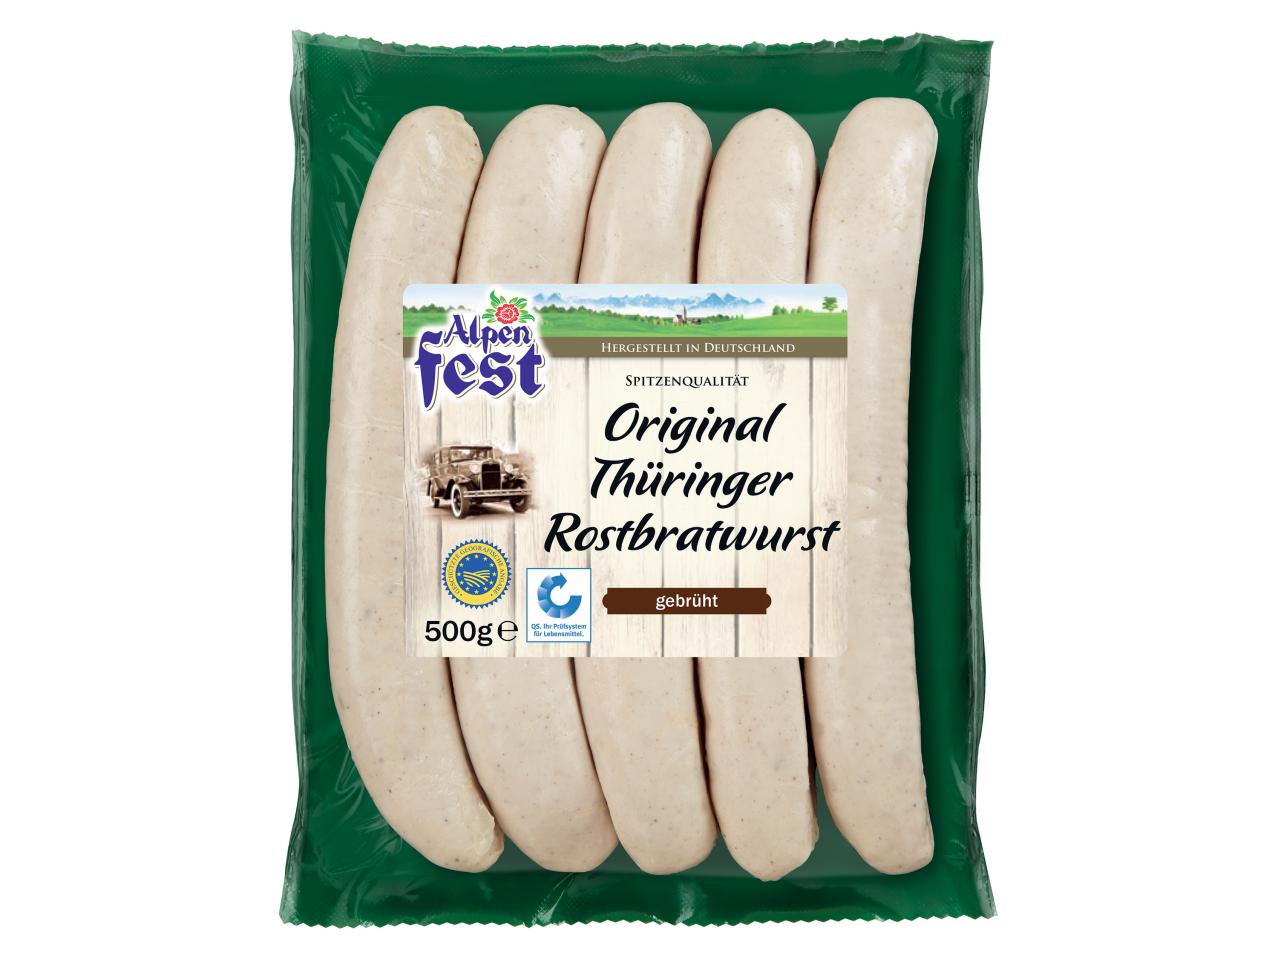 Thüringer Rostbratwurst Véritables saucisses de Thuringue IGP1